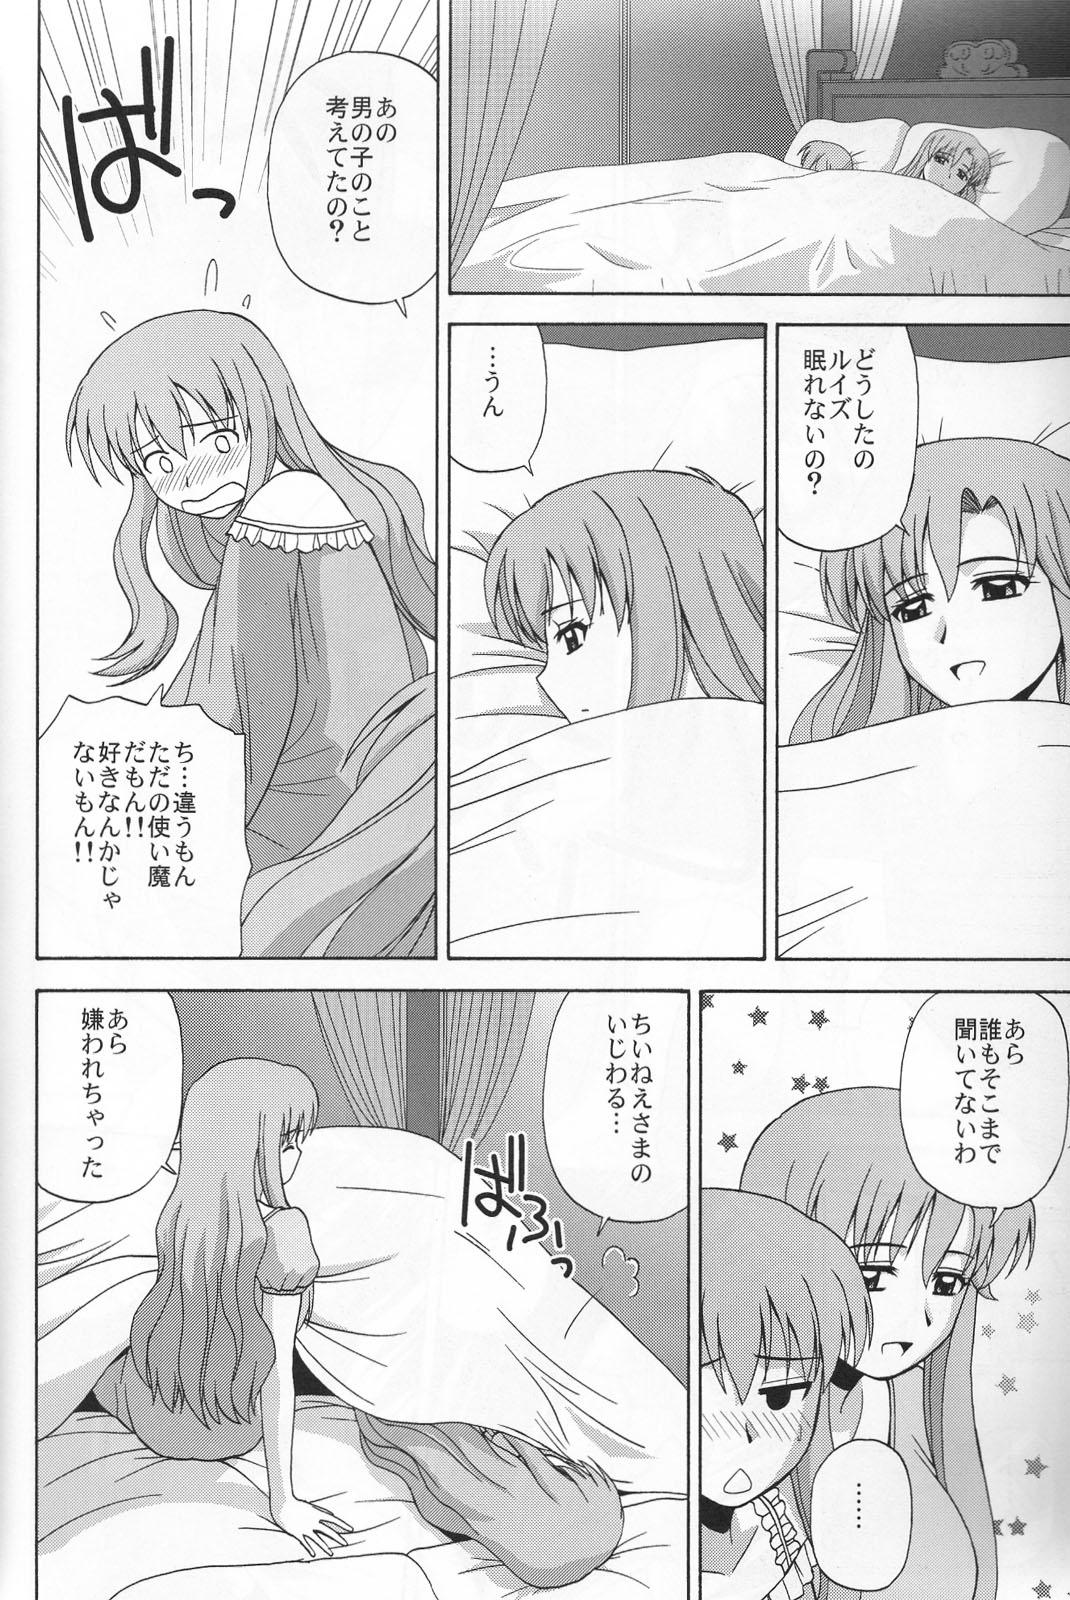 Abuse Le beau maitre 6 - Zero no tsukaima Hetero - Page 9